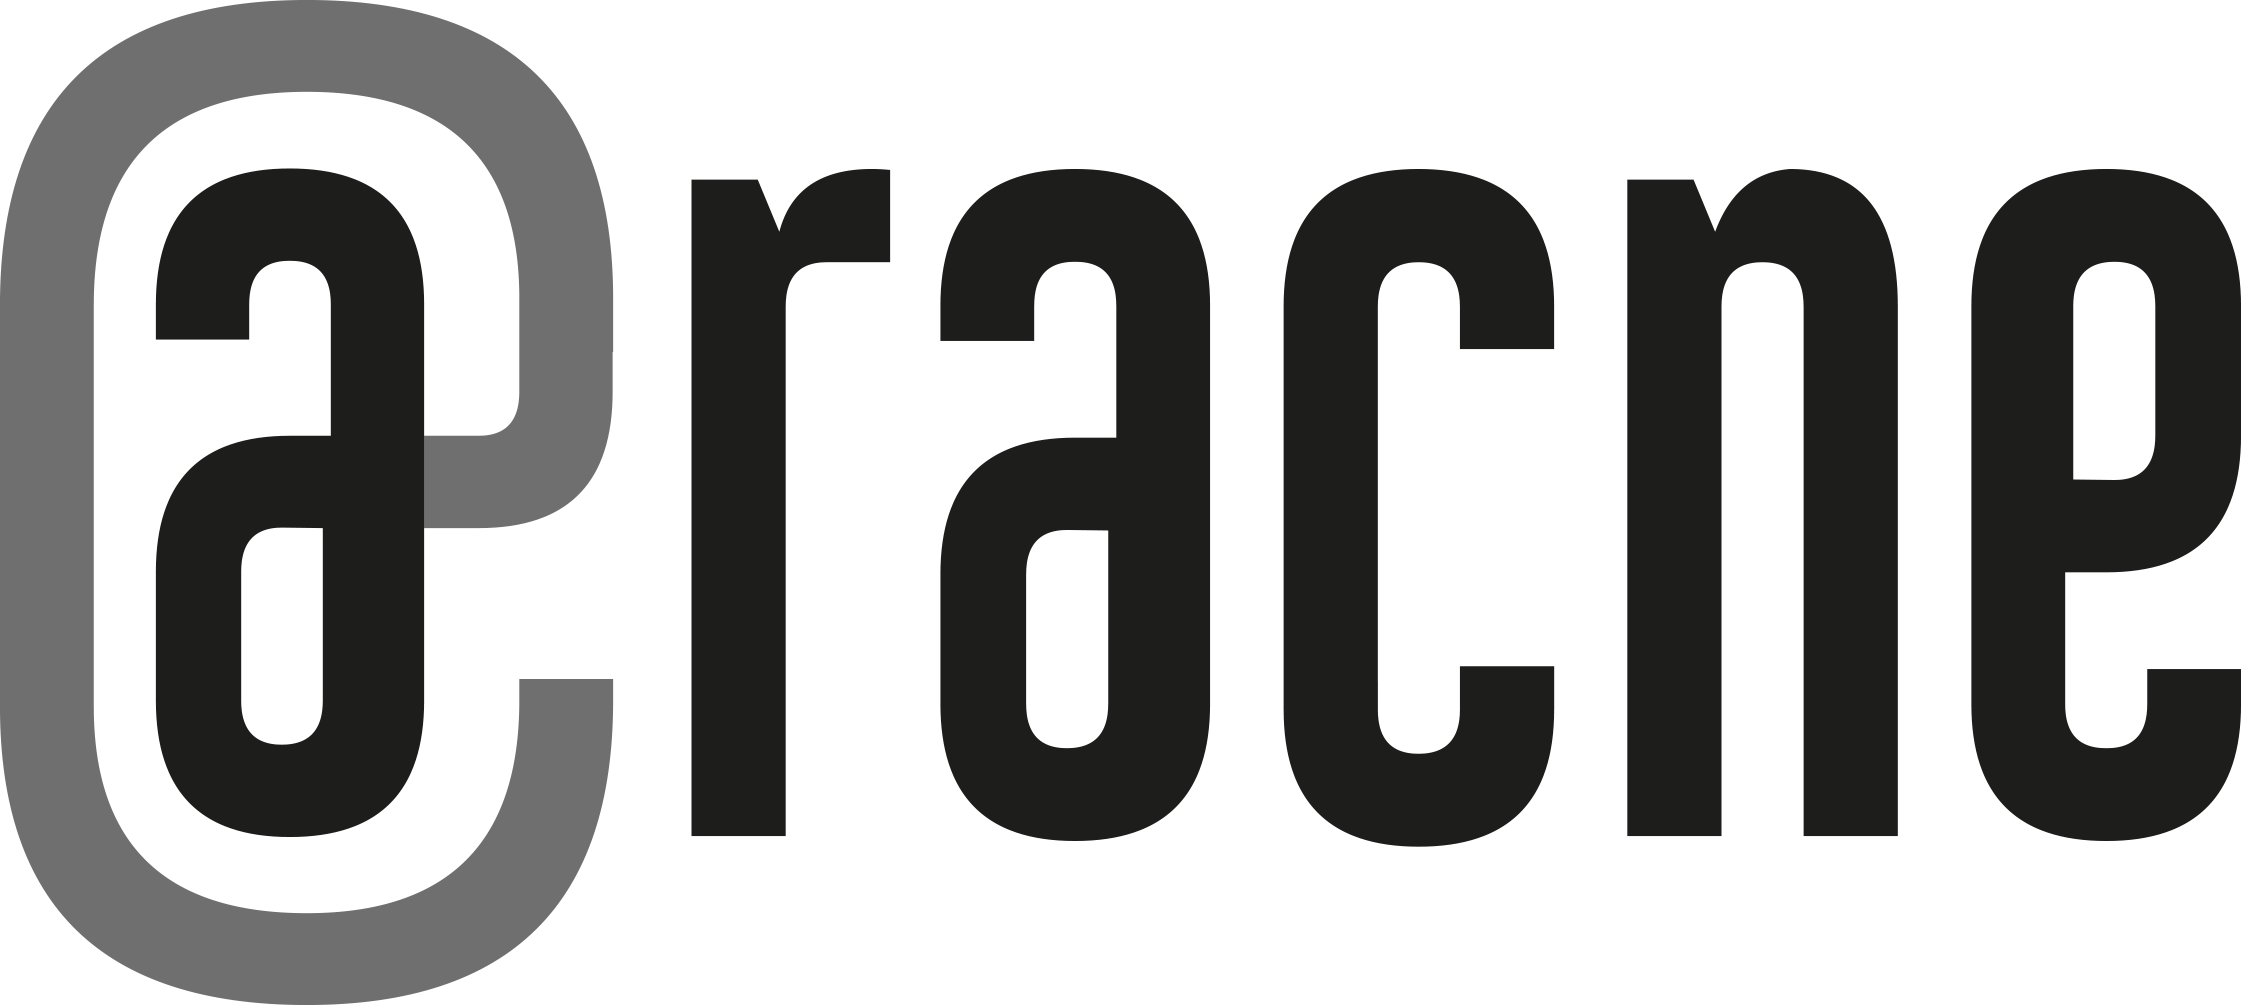 publisher aracne logo